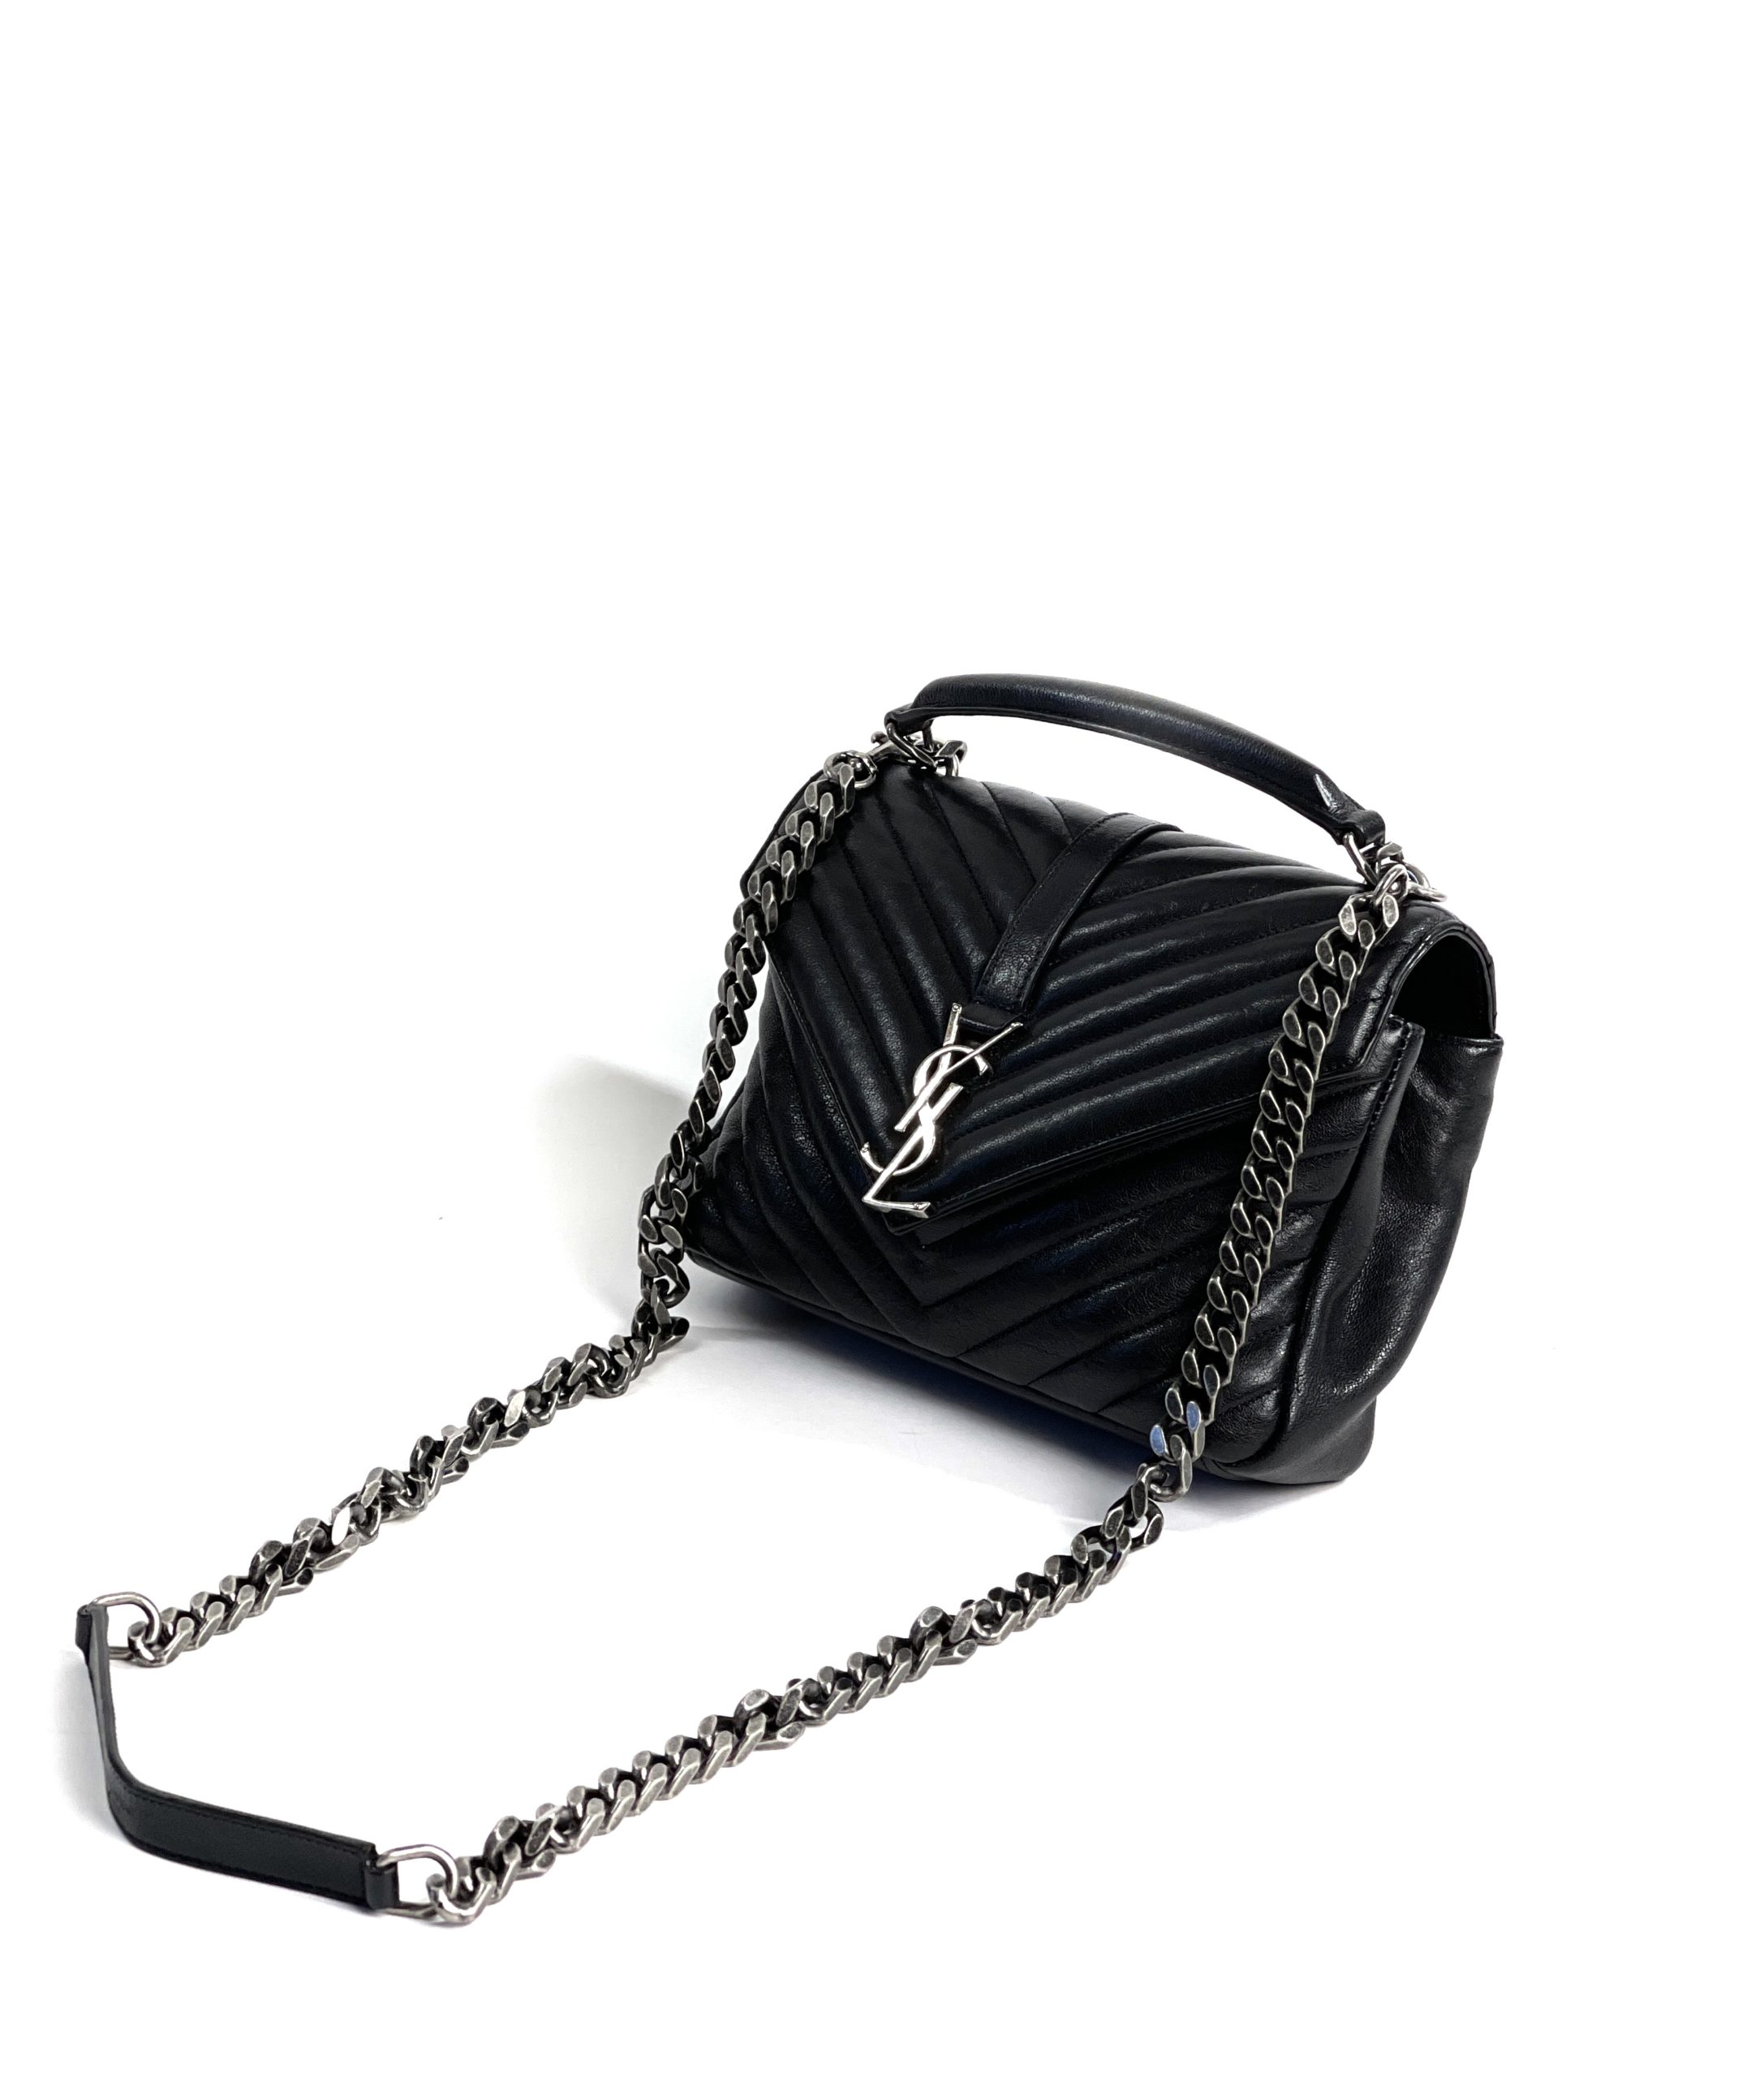 YSL Saint Laurent College Medium Bag - Black Leather Shoulder Bag